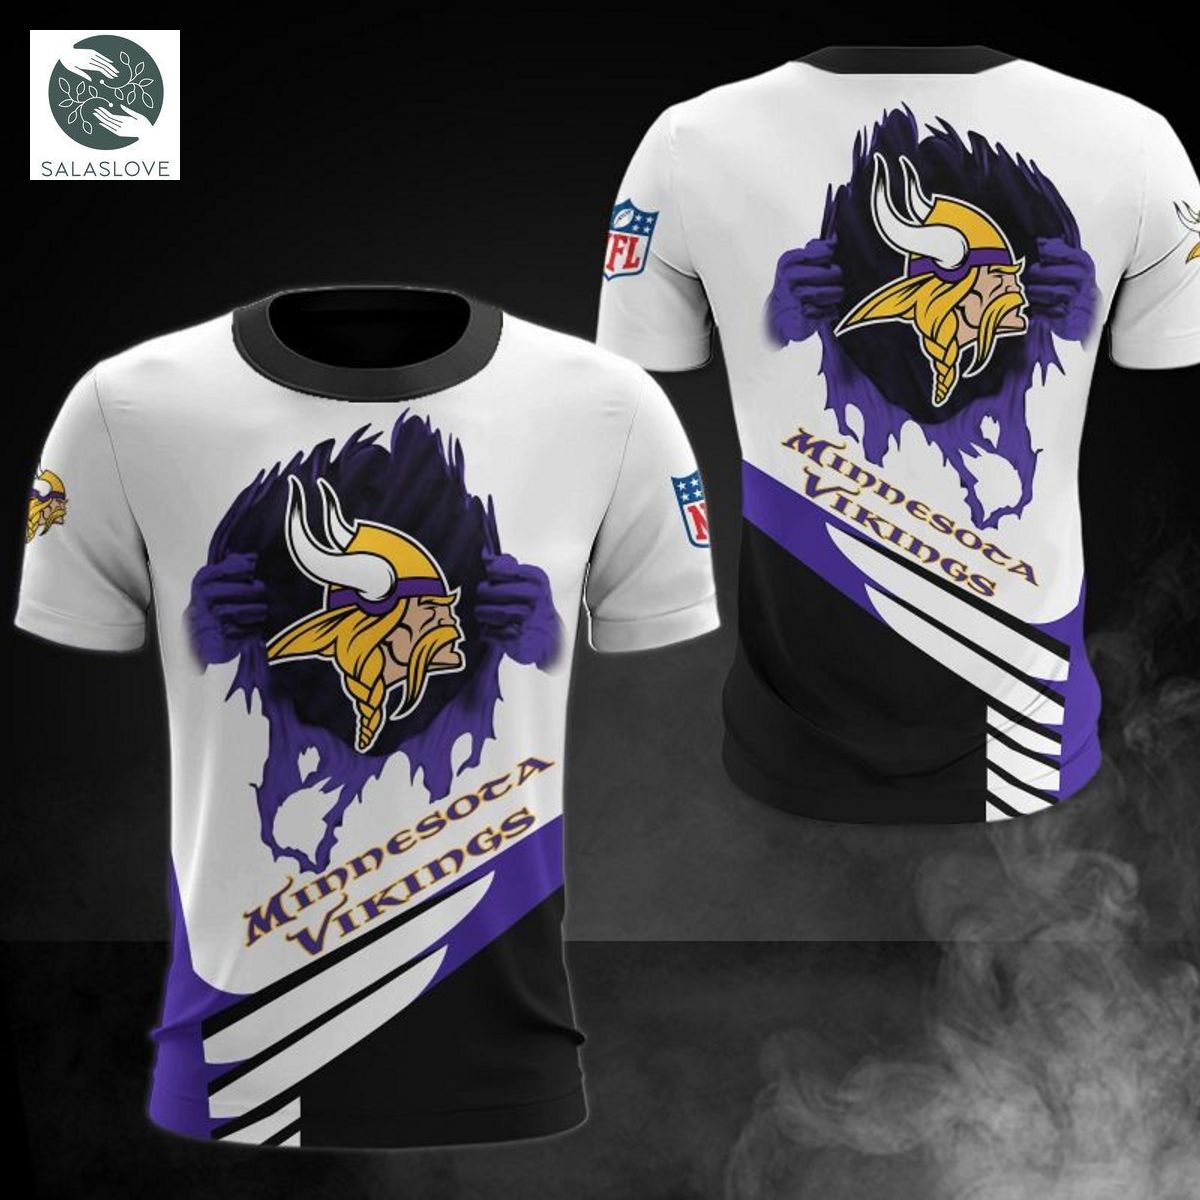 Minnesota Vikings T-shirt cool graphic gift for men